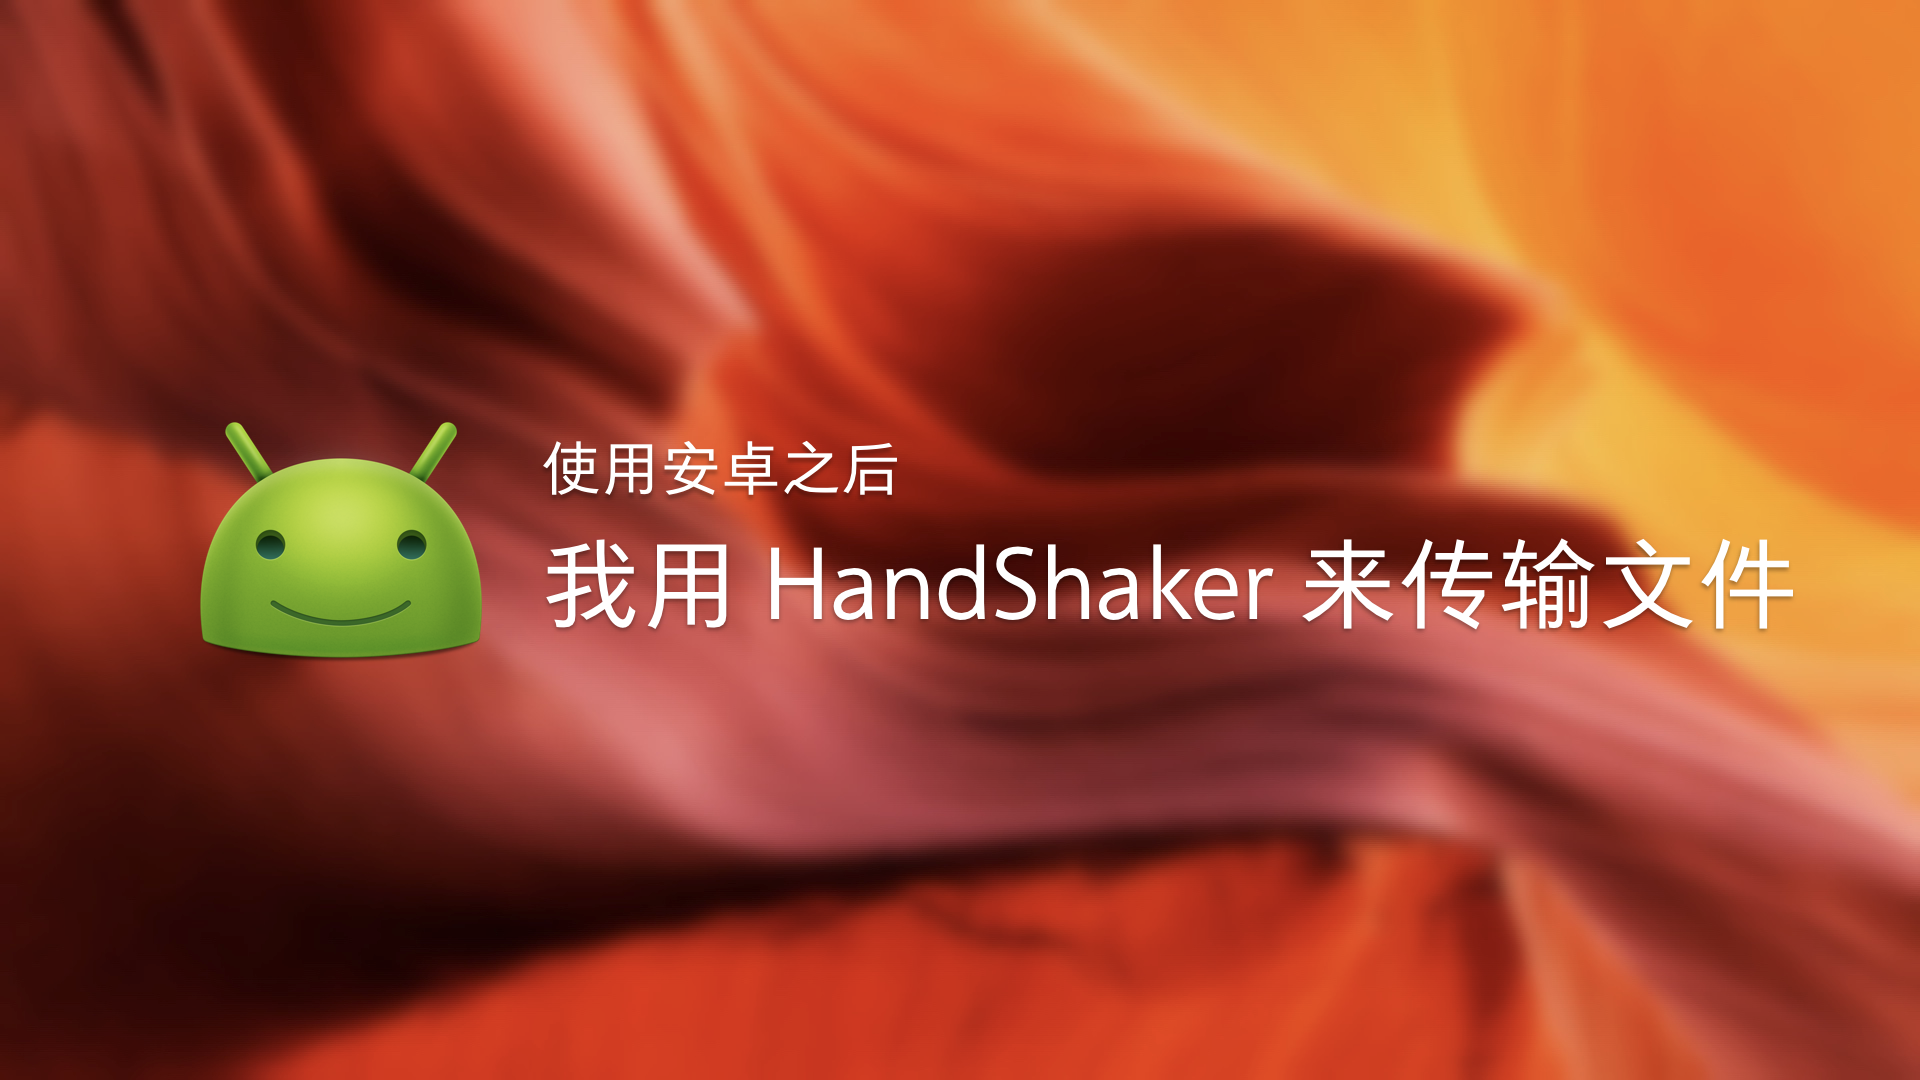 handshaker app